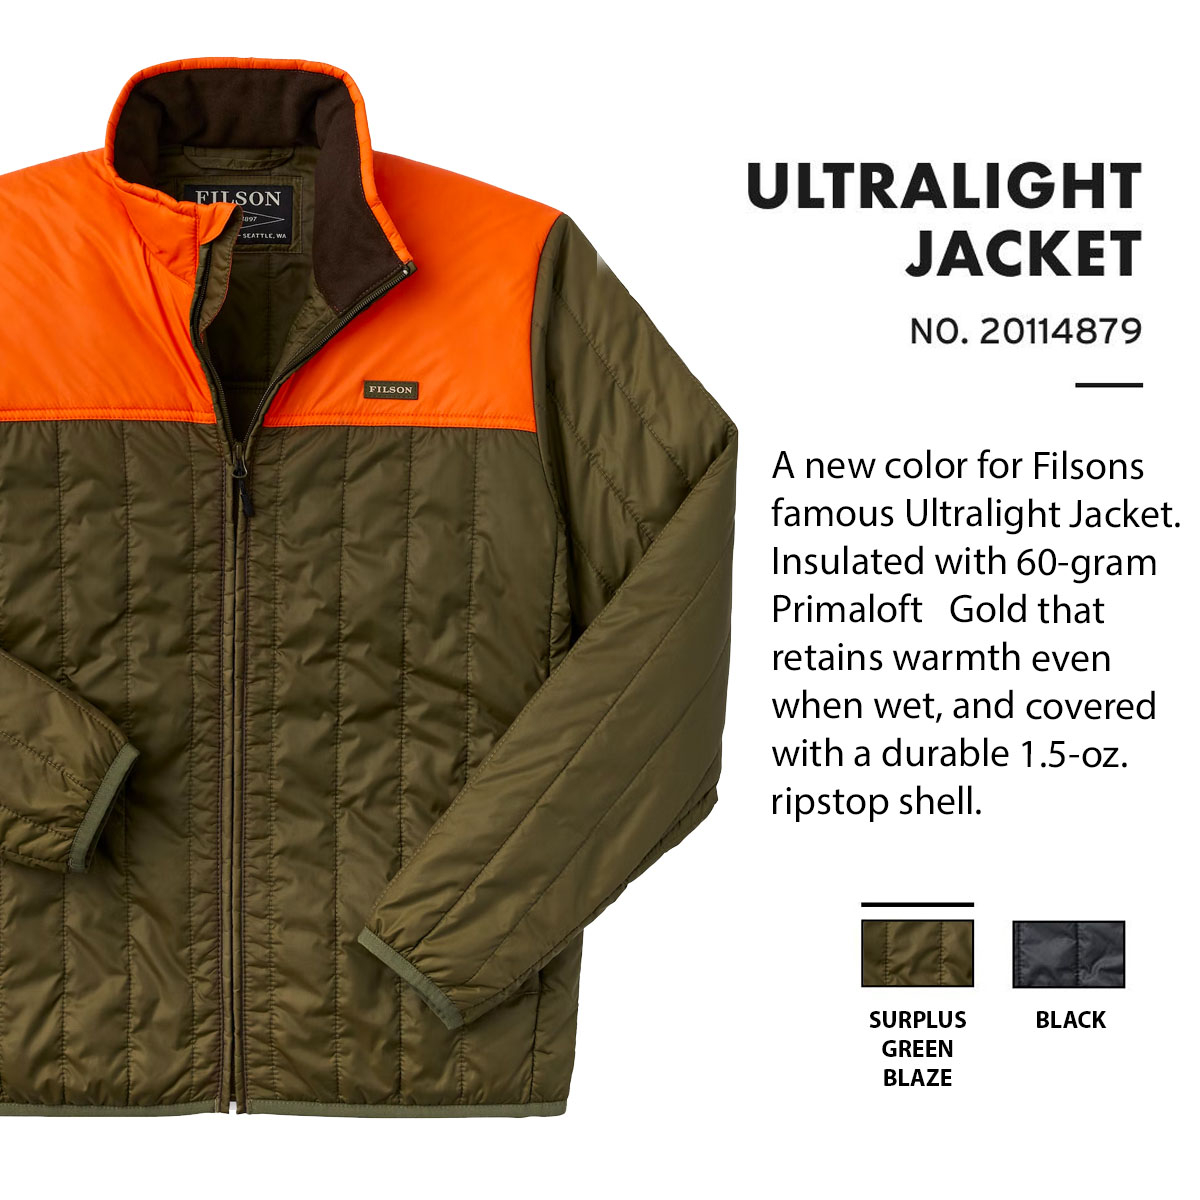 Filson Ultralight Jacket Surplus Green Blaze, perfekt als äußere Schicht oder unter einer Jacke für Wärme bei extremer Kälte